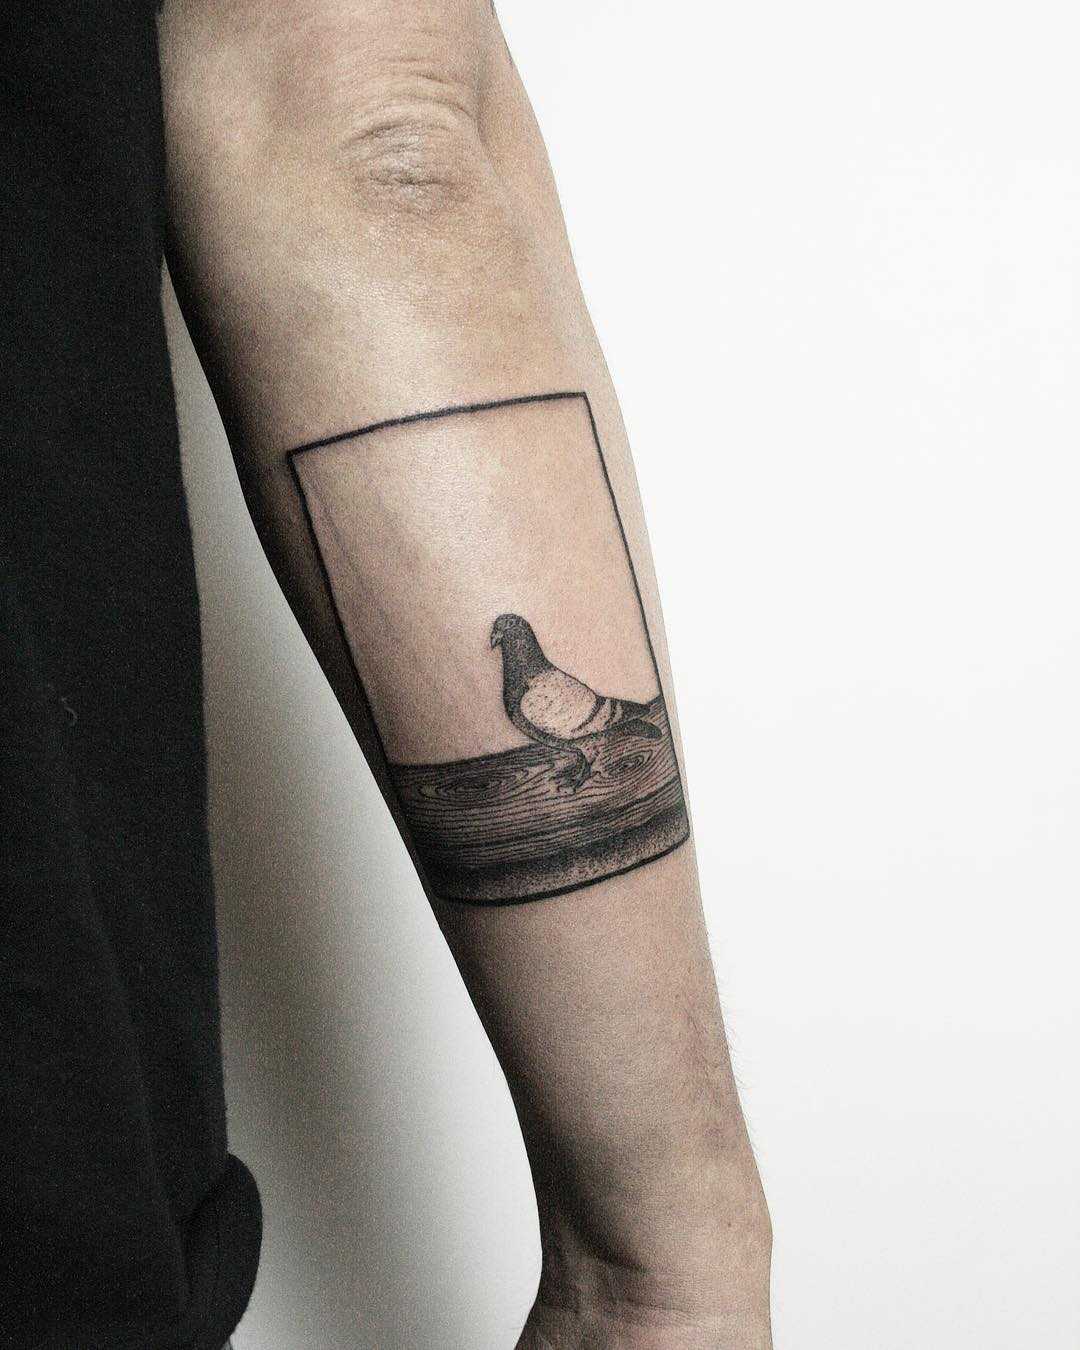 Beautiful pigeon tattoo by tattooist Spence @zz tattoo